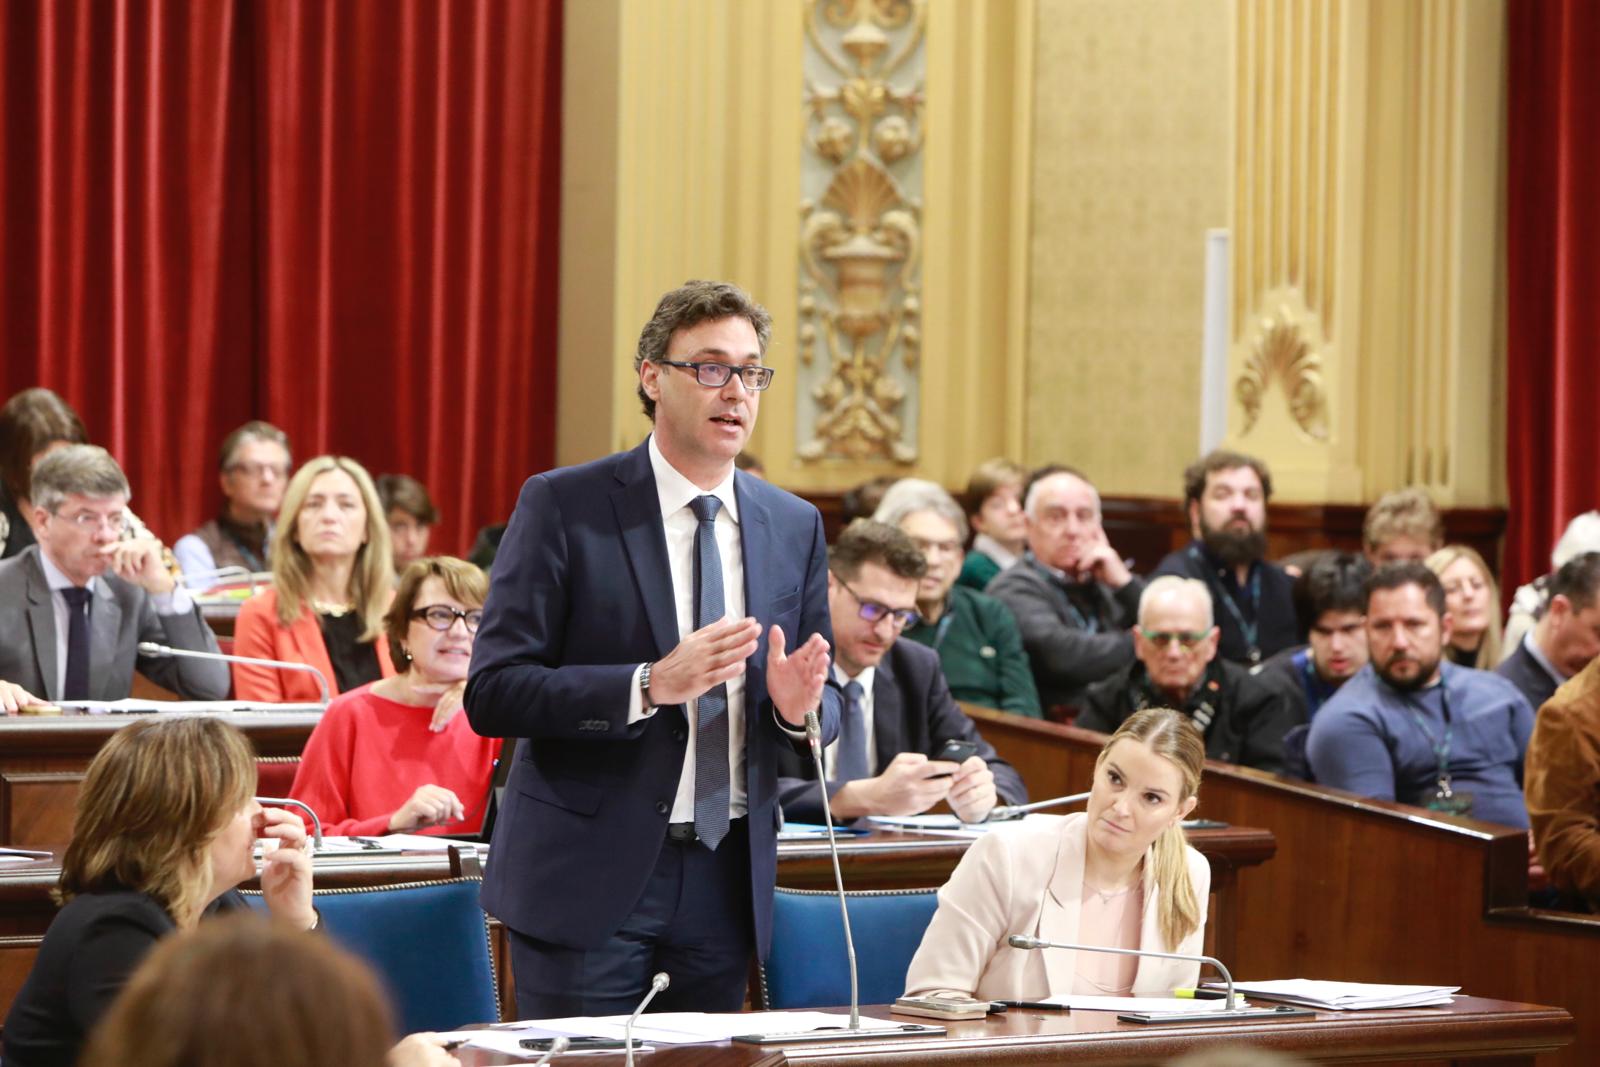 Intervenció al Parlament del vicepresident i conseller d'Economia, Hisenda i Innovació, Antoni Costa